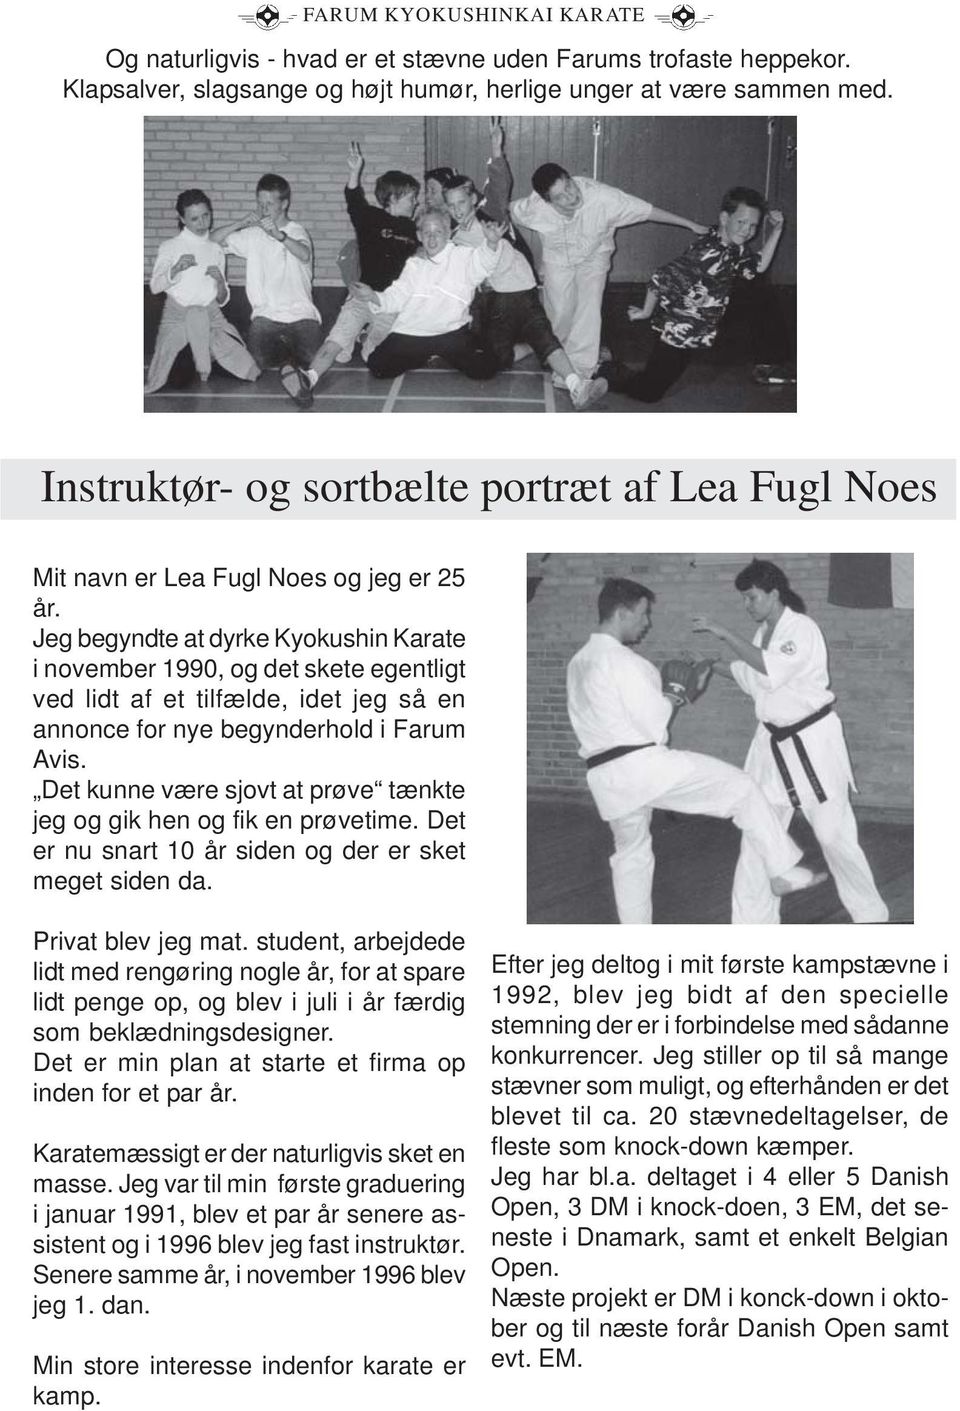 Jeg begyndte at dyrke Kyokushin Karate i november 1990, og det skete egentligt ved lidt af et tilfælde, idet jeg så en annonce for nye begynderhold i Farum Avis.